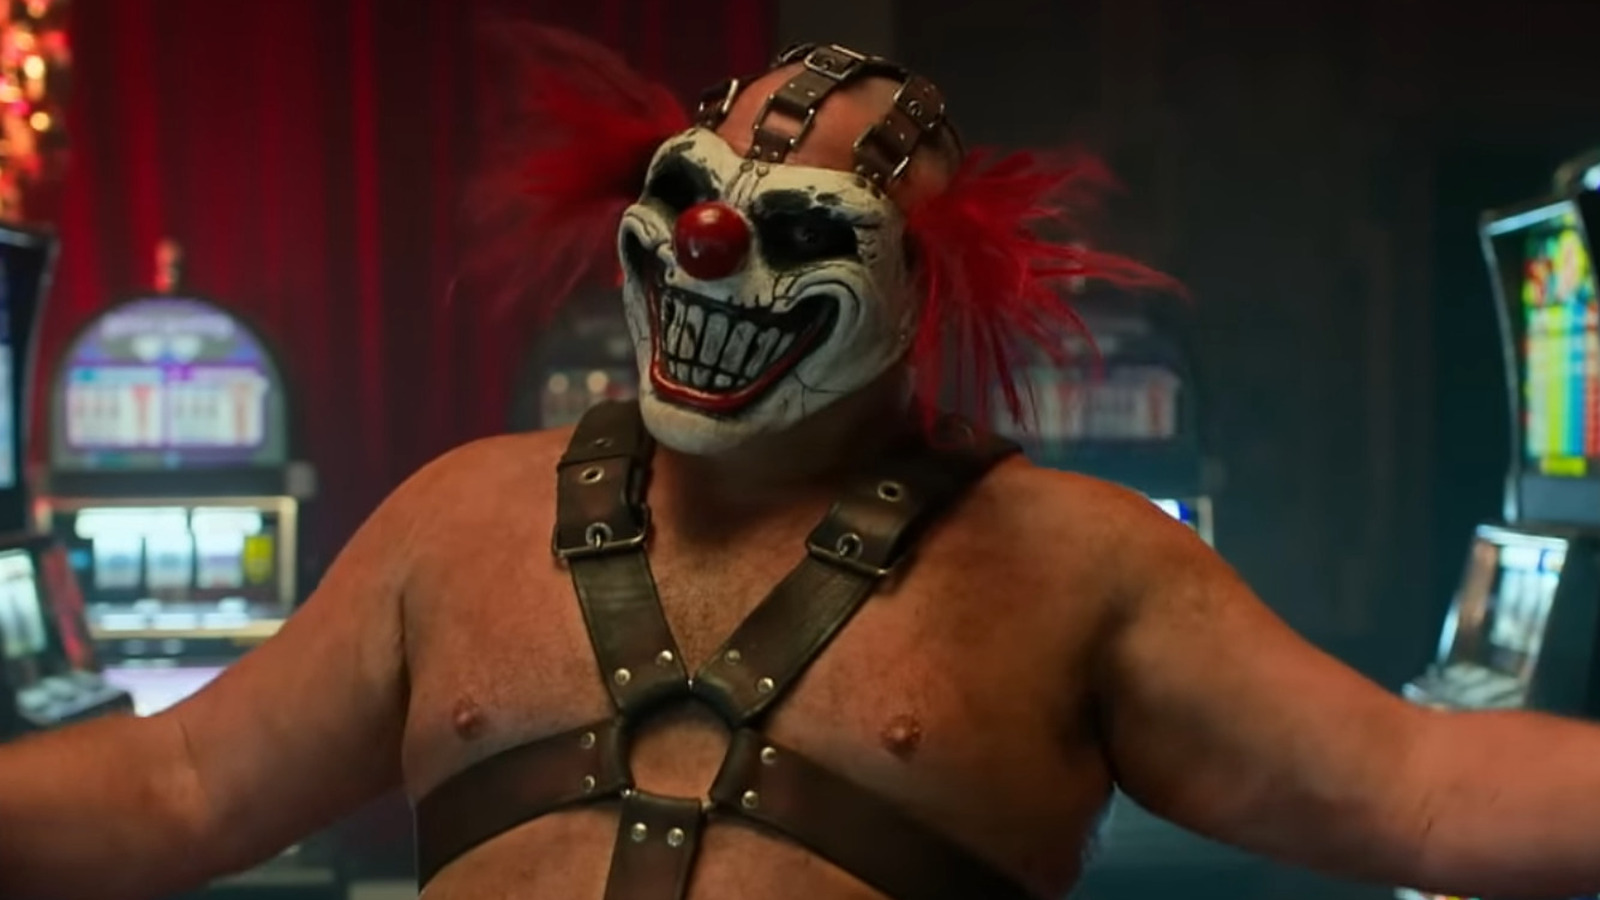 Kijk hoe Samoa Joe zo wild wordt als zoetekauw in de trailer van de Twisted Metal-serie